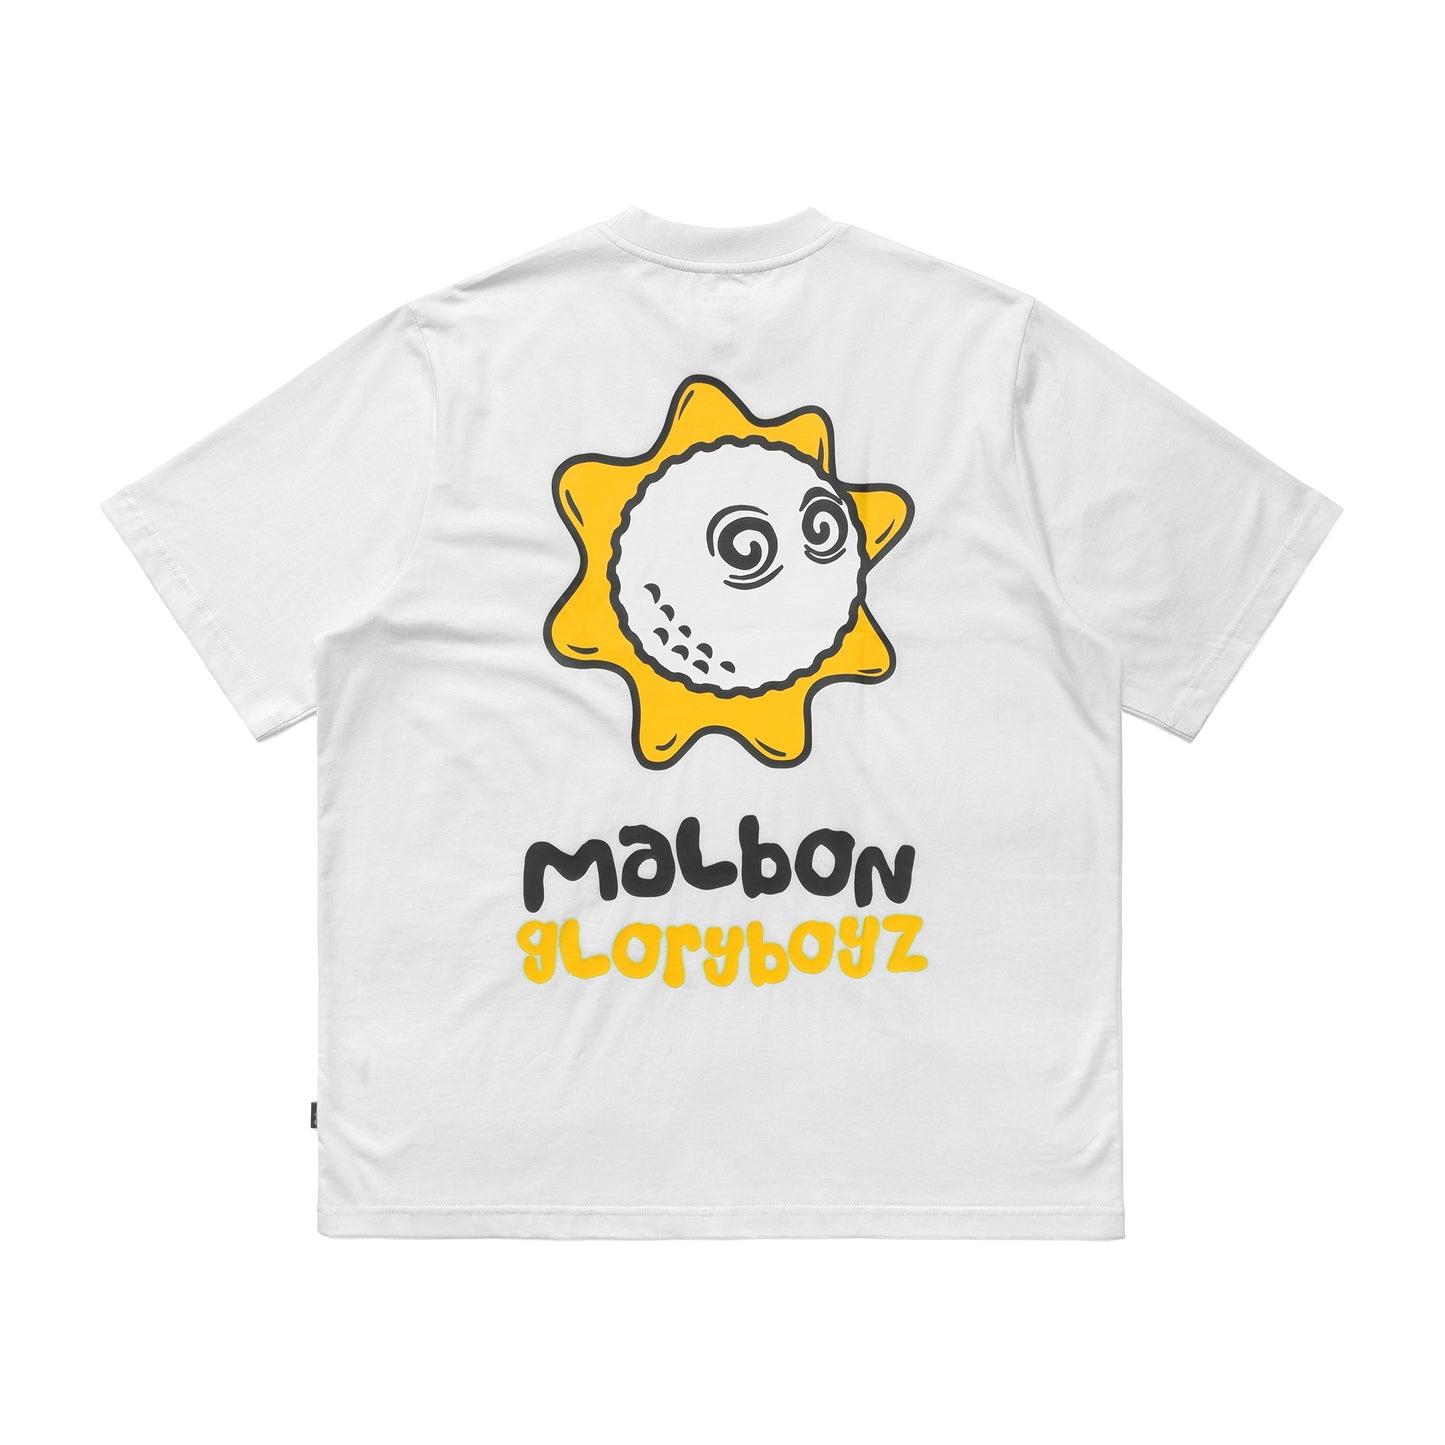 Malbon x Gloryboyz Tee (White)